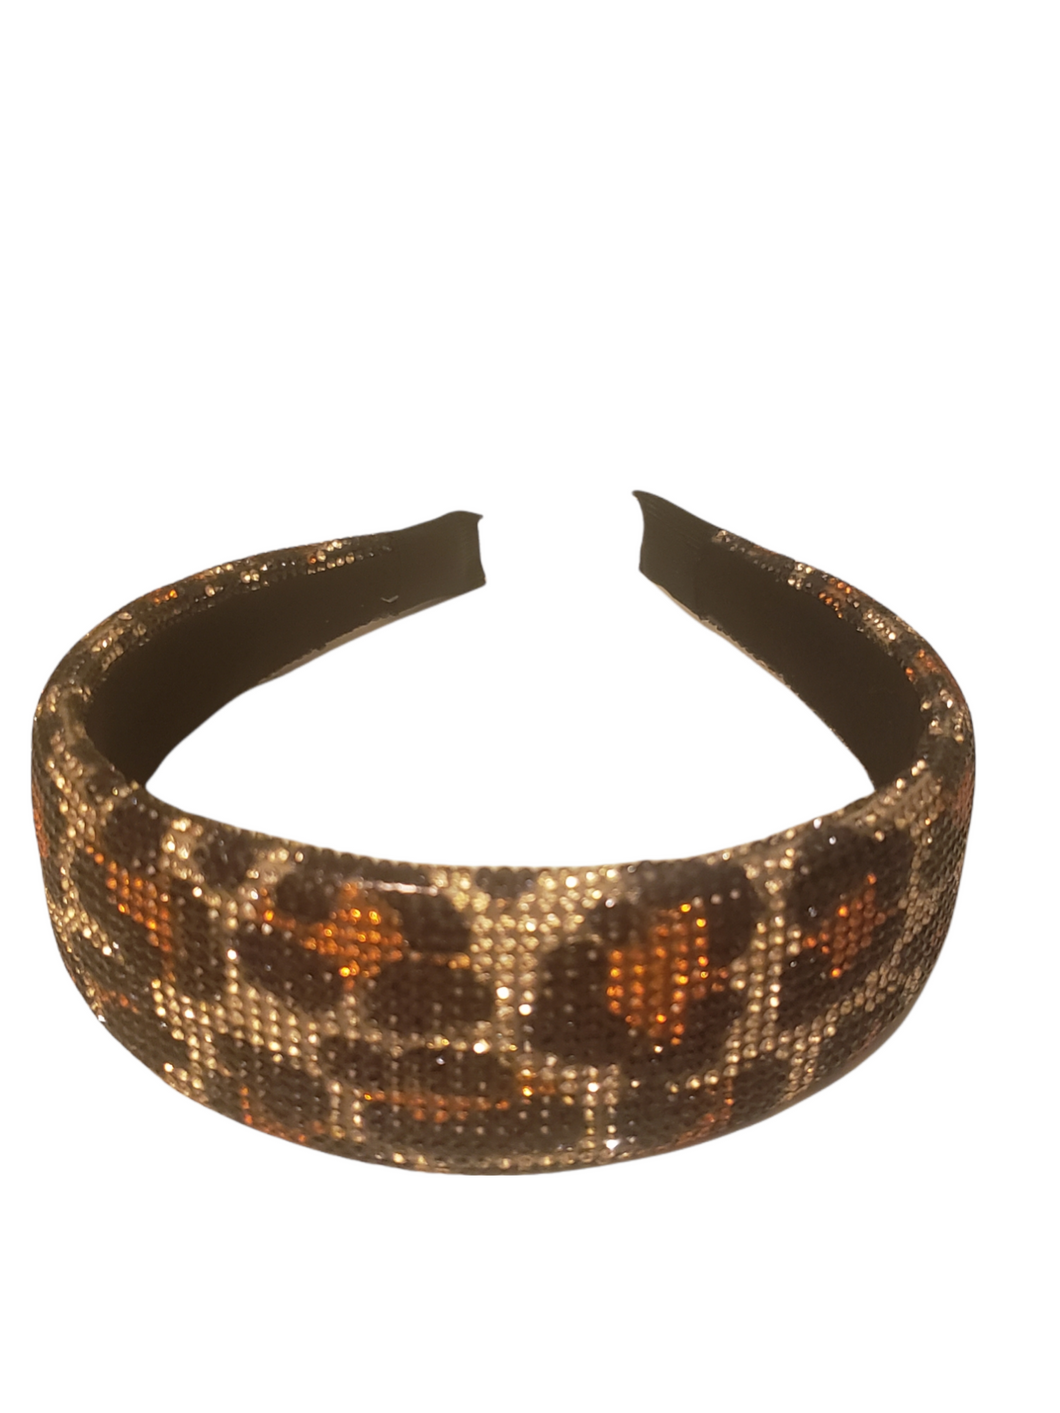 Leopard rhinestone headbands for women